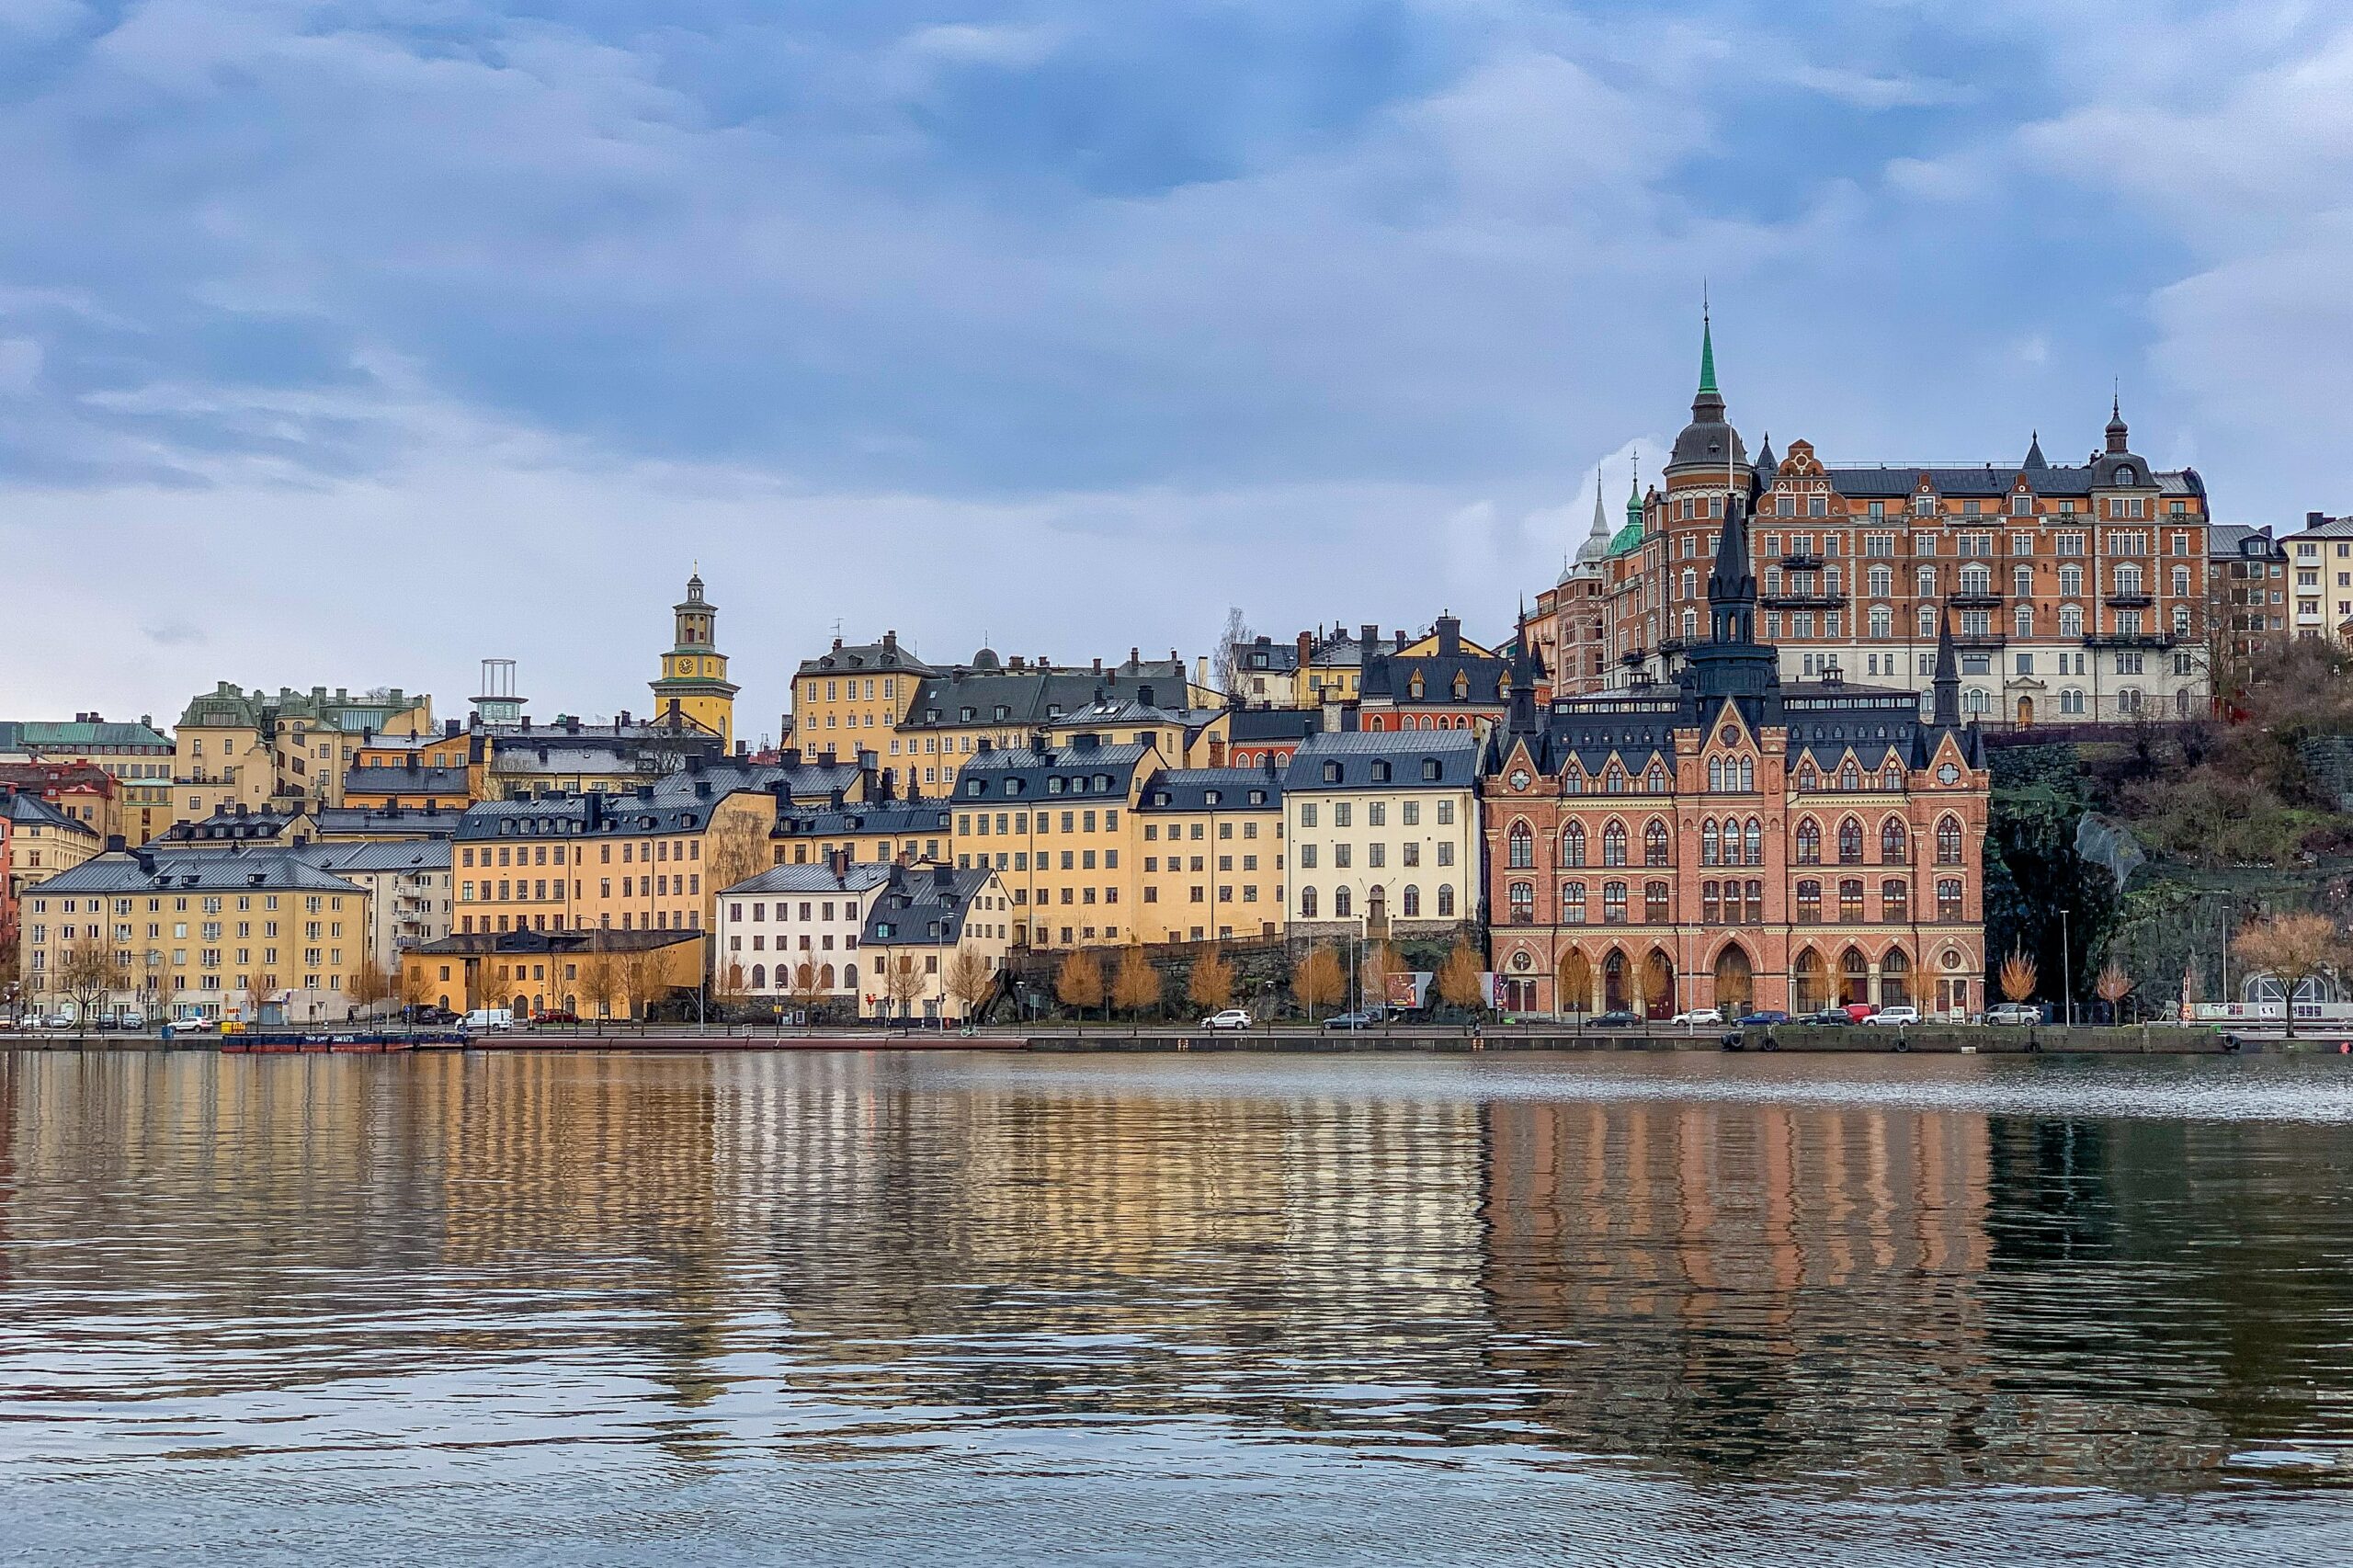 List of 3 hotel investors in Scandinavia